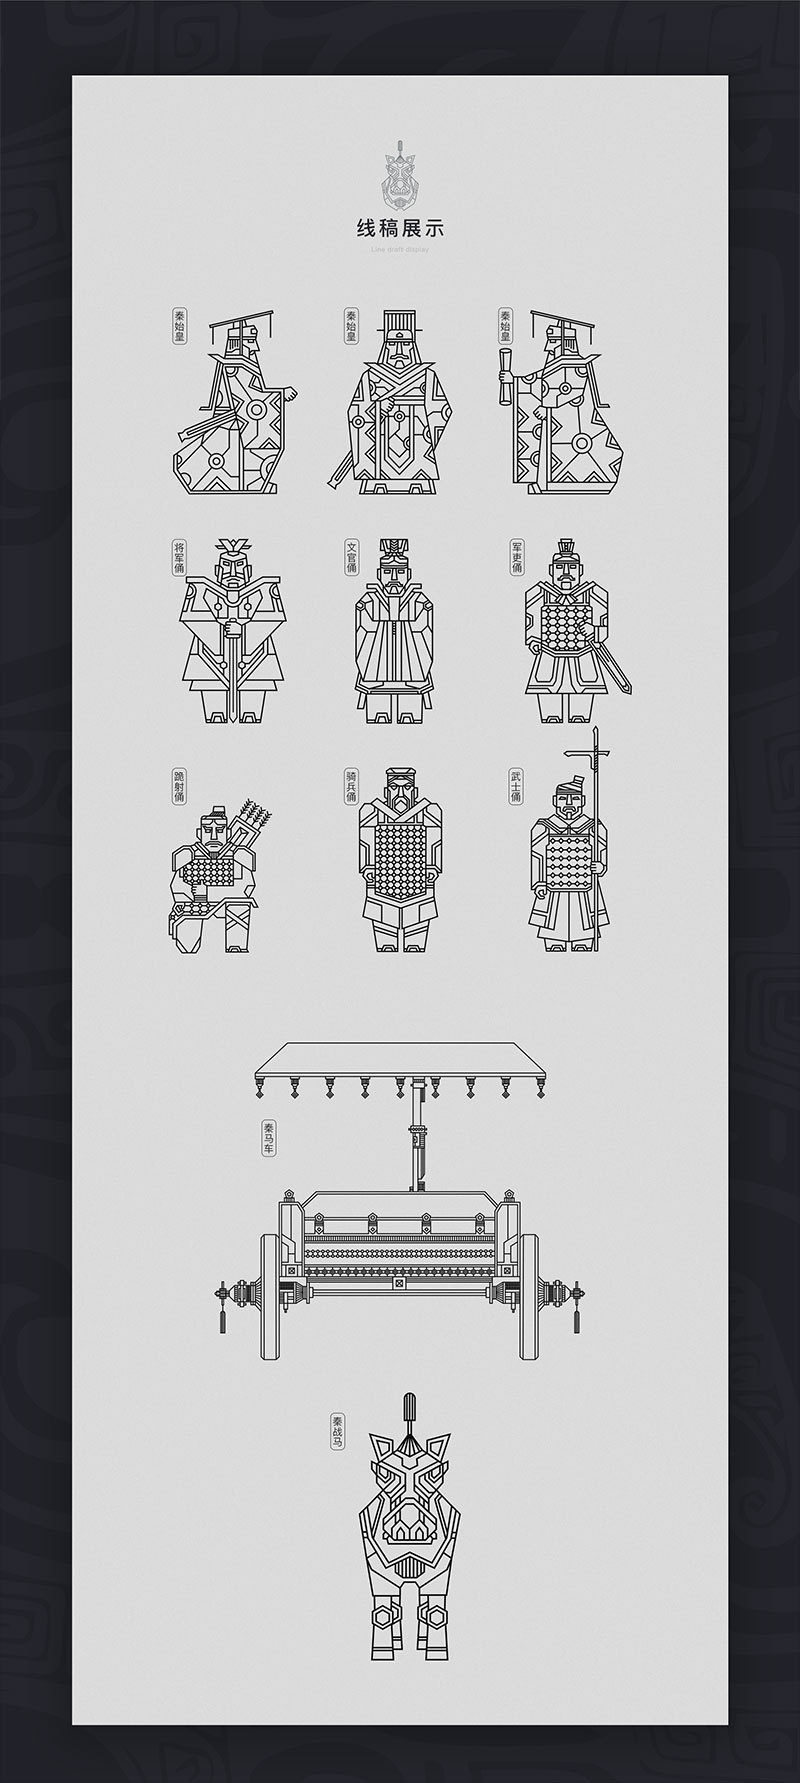 西安十三朝文化创意邮箱公司文创兵马俑——龙帝军团插画图1